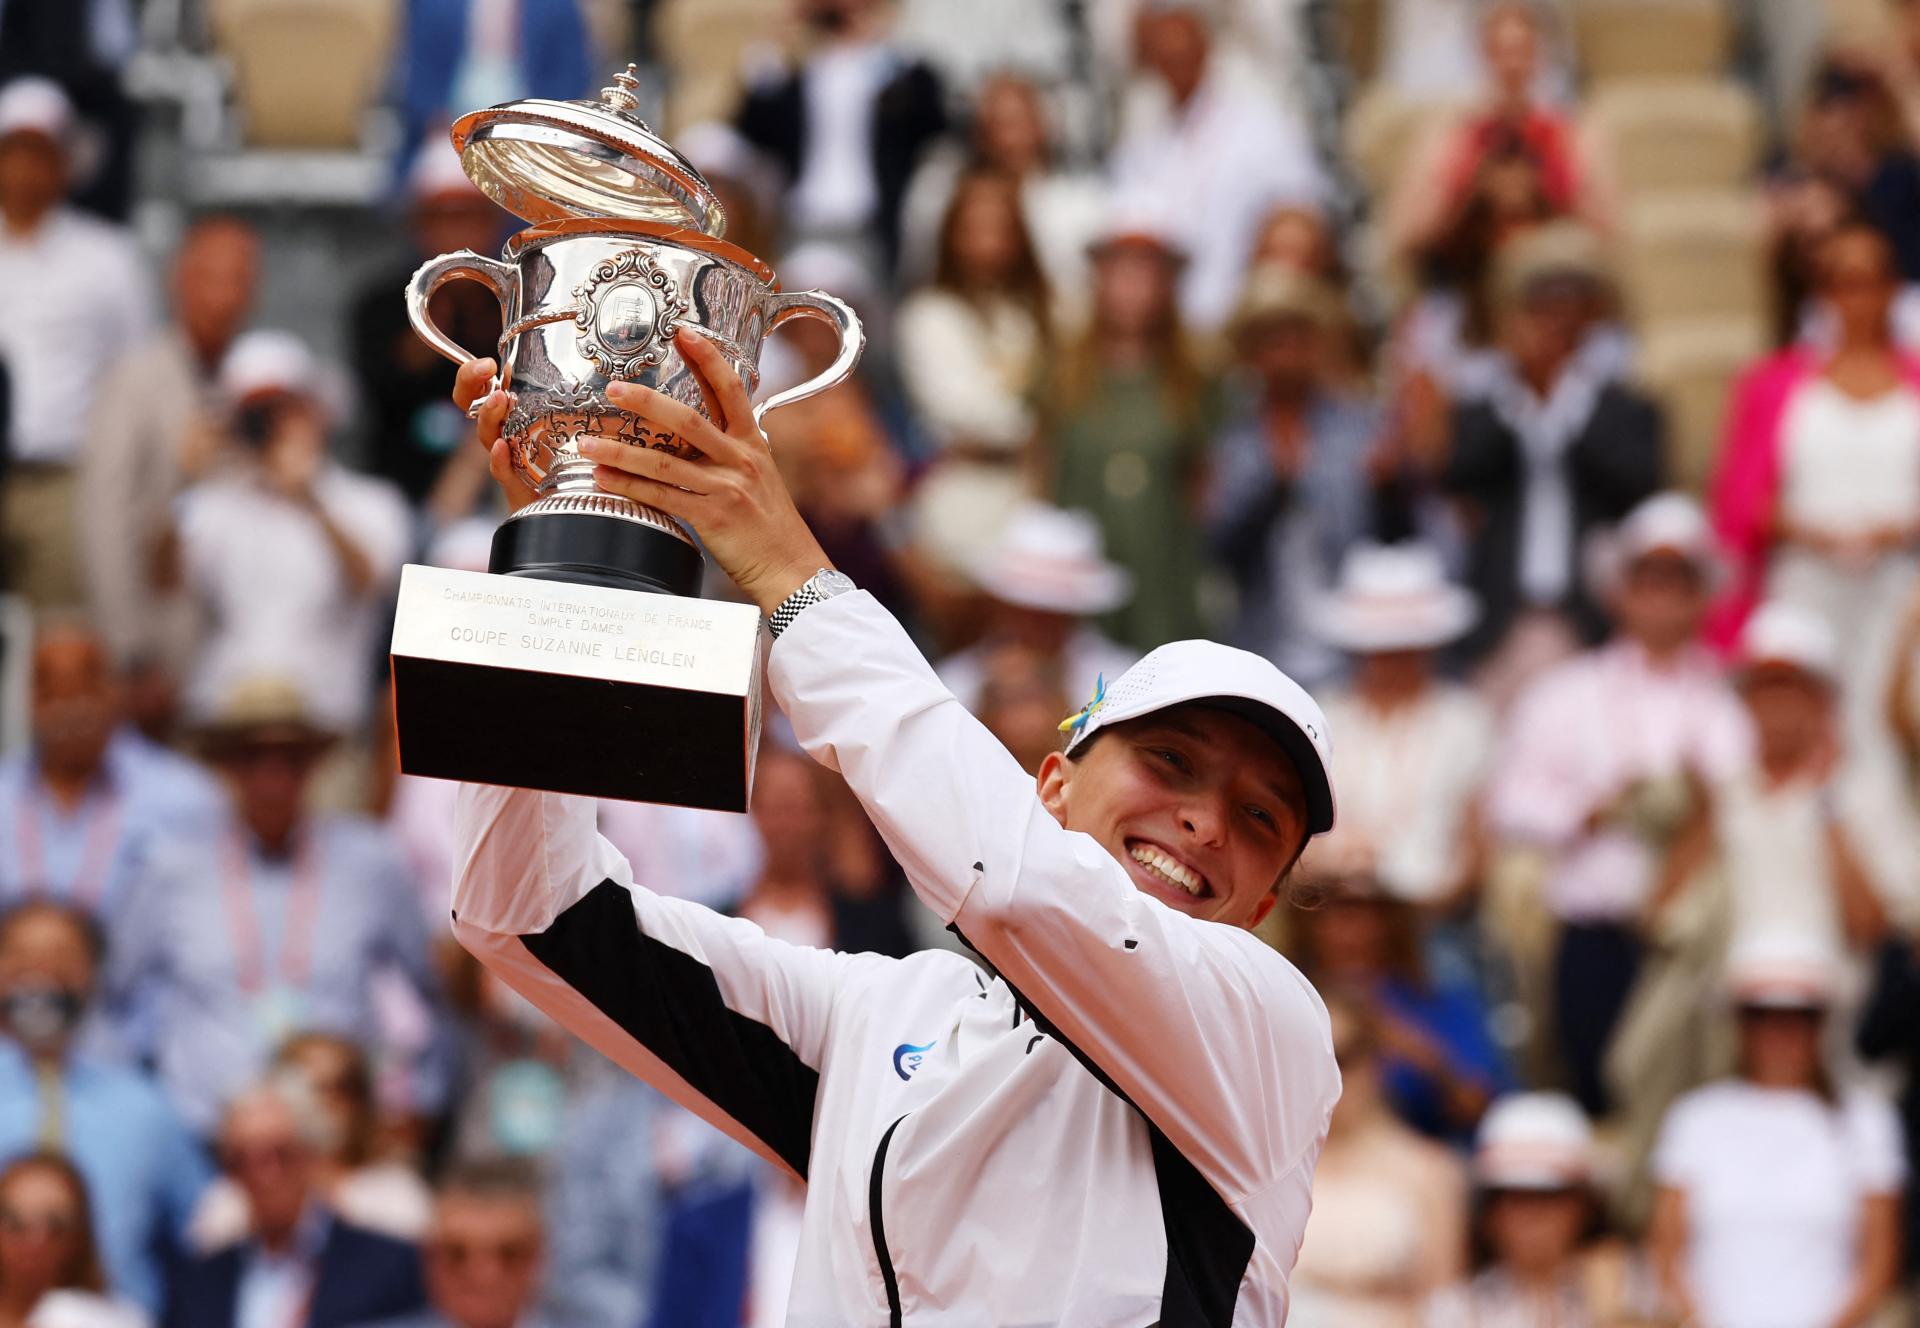 Poľka Swiateková sa stala po tretíkrát víťazkou Roland Garros, na celom turnaji stratila len jeden set